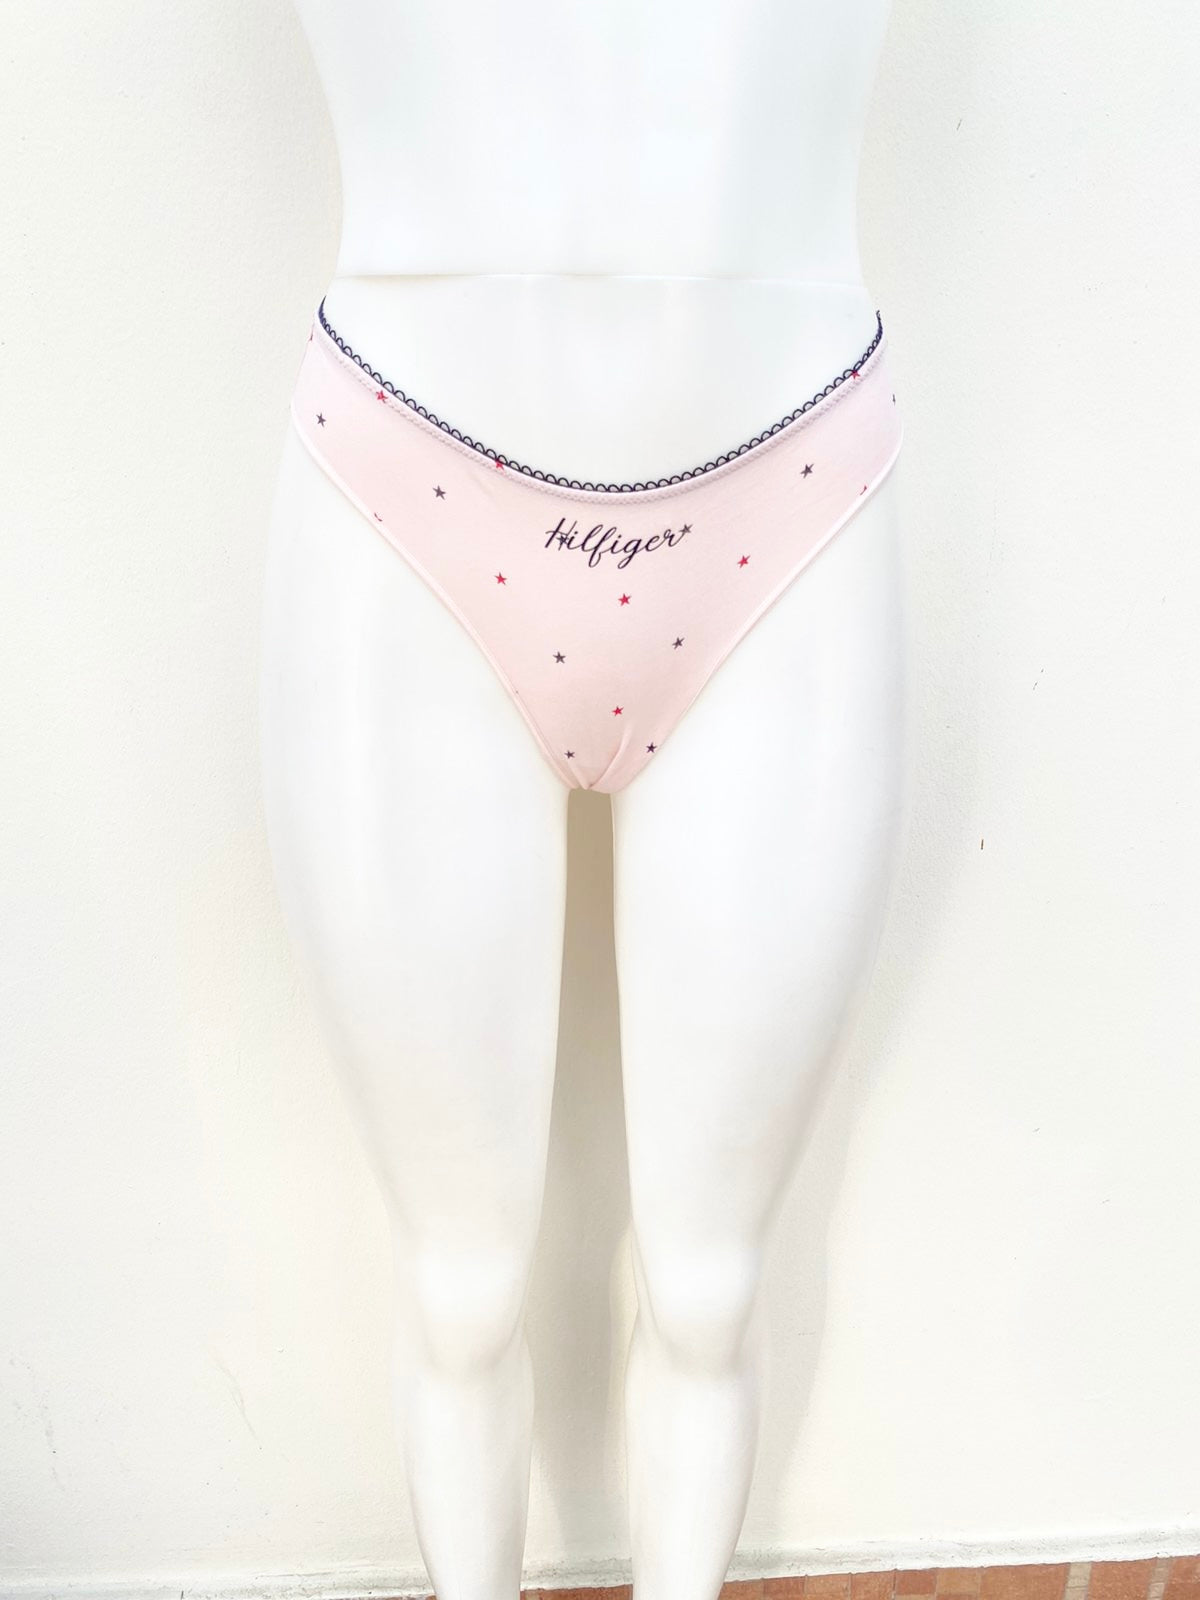 Panti TOMMY HILFIGER  Original, color rosado claro, con detalles en estrellas.